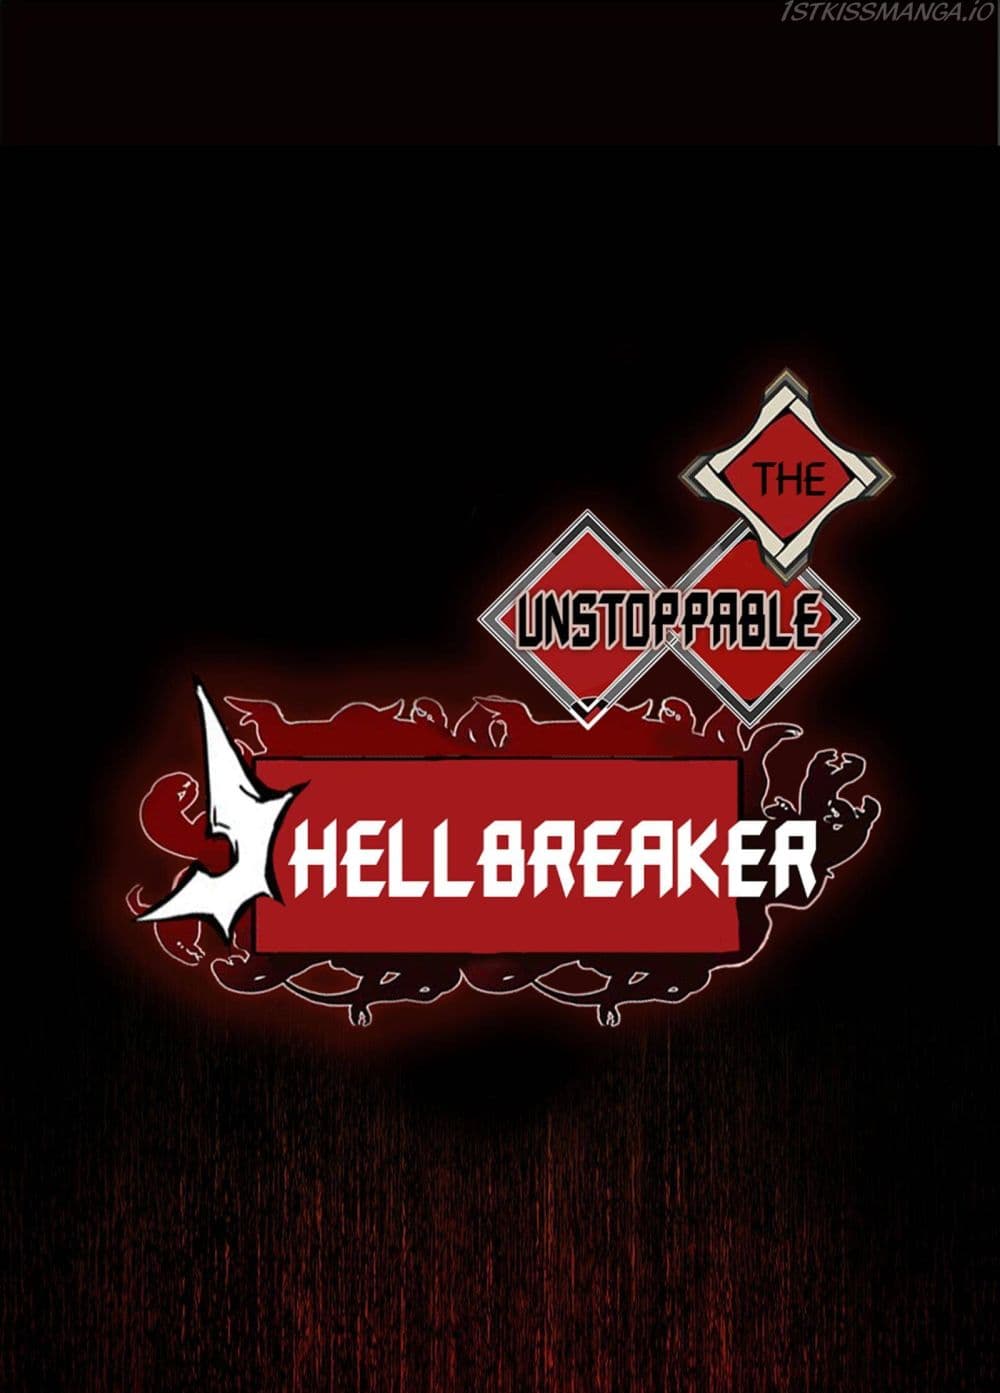 The Unstoppable Hellbreaker 18-18